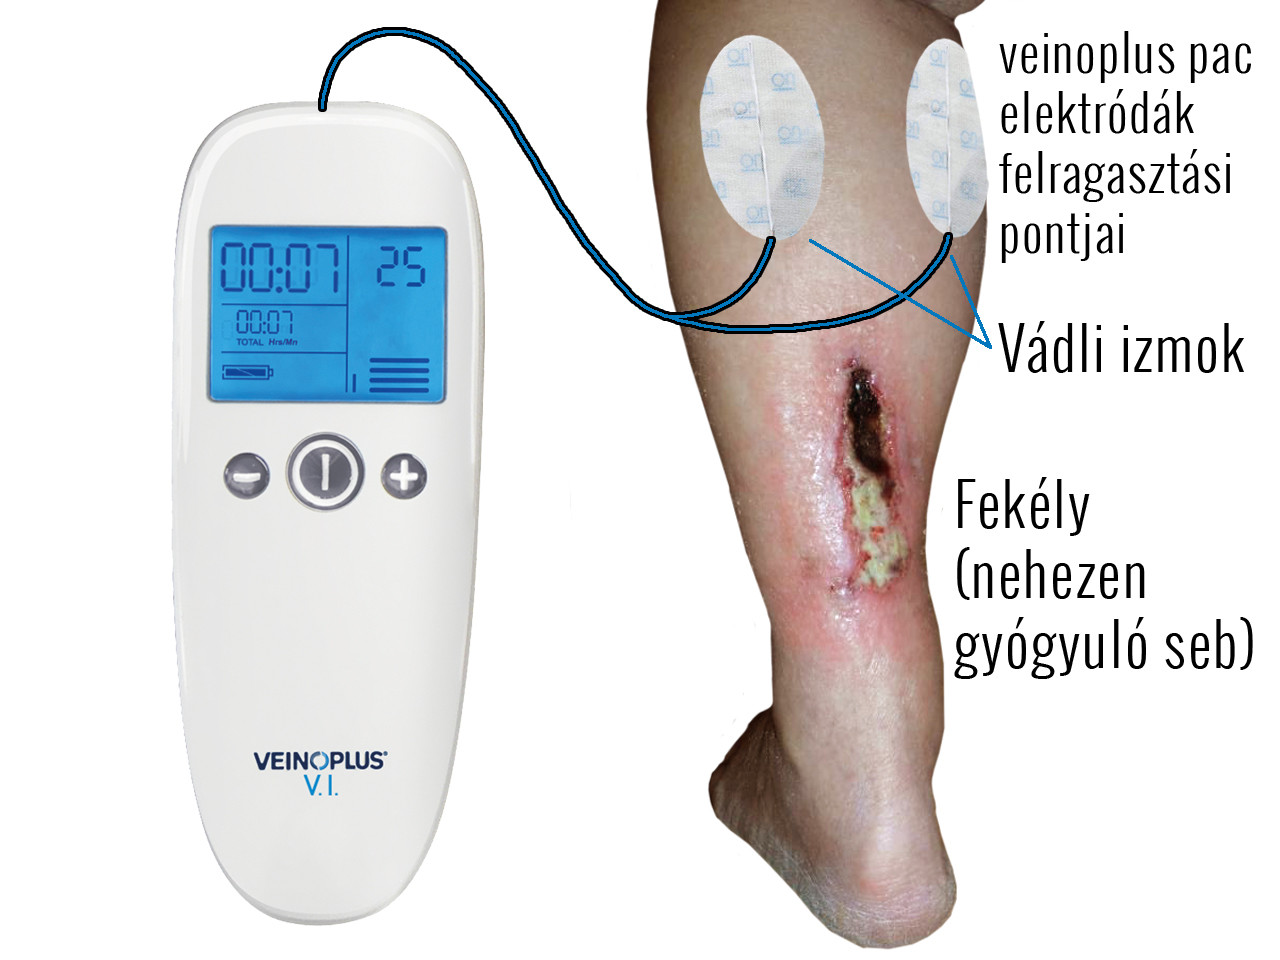 népszerű sebek kezelésére lábakon diabetes inzulinrezisztencia teszt otthon